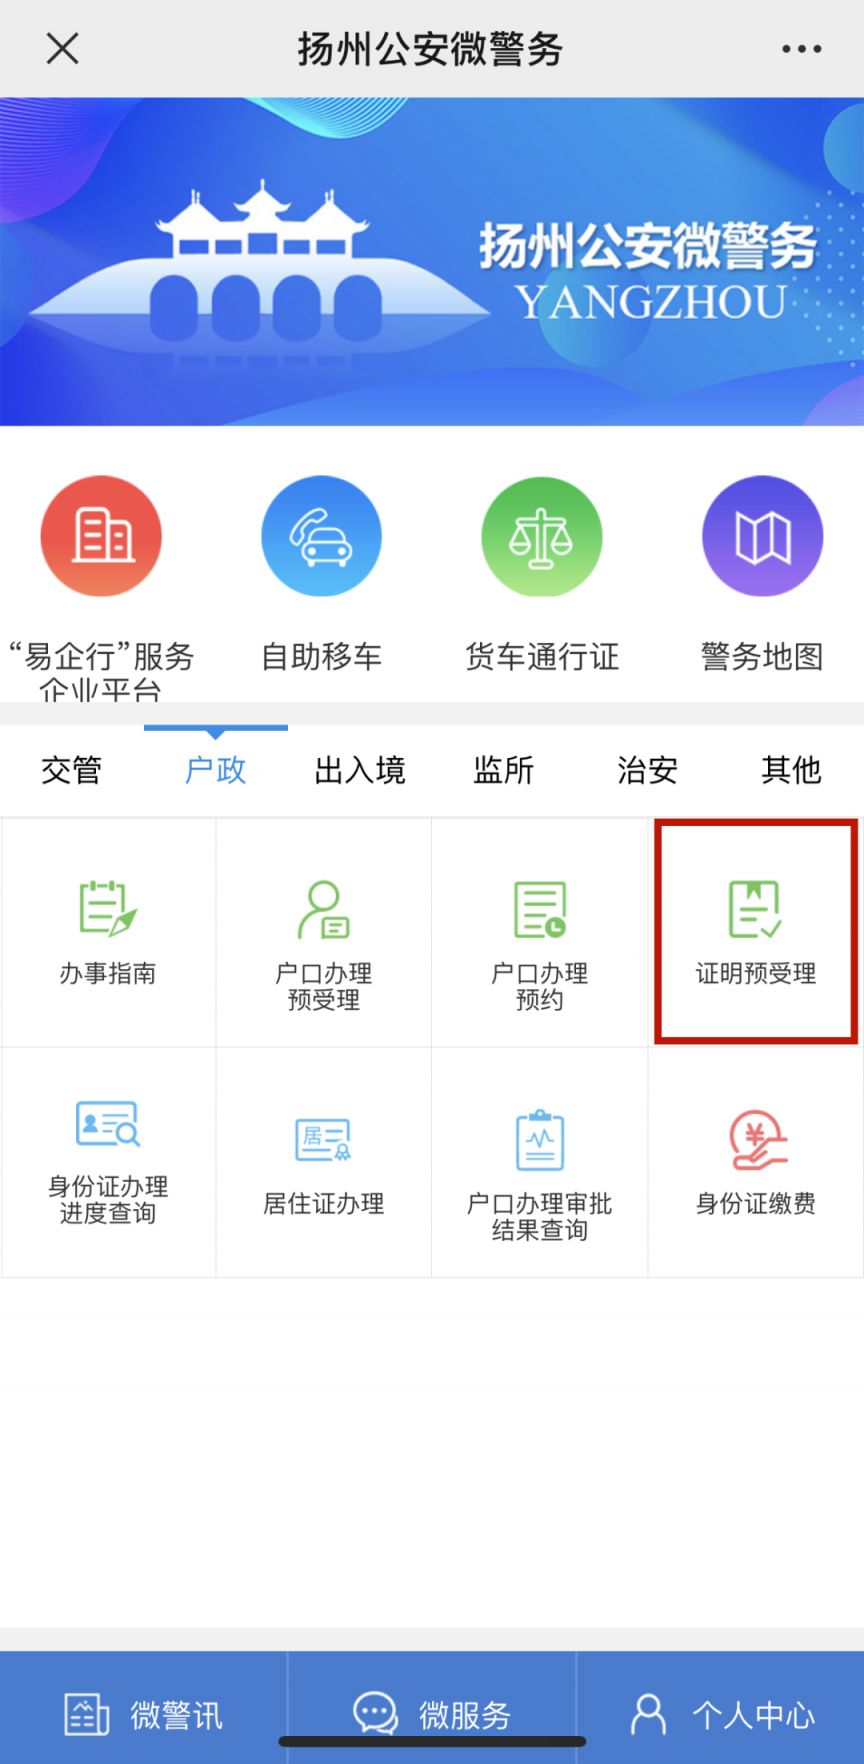 扬州无犯罪证明的网上申请流程及入口